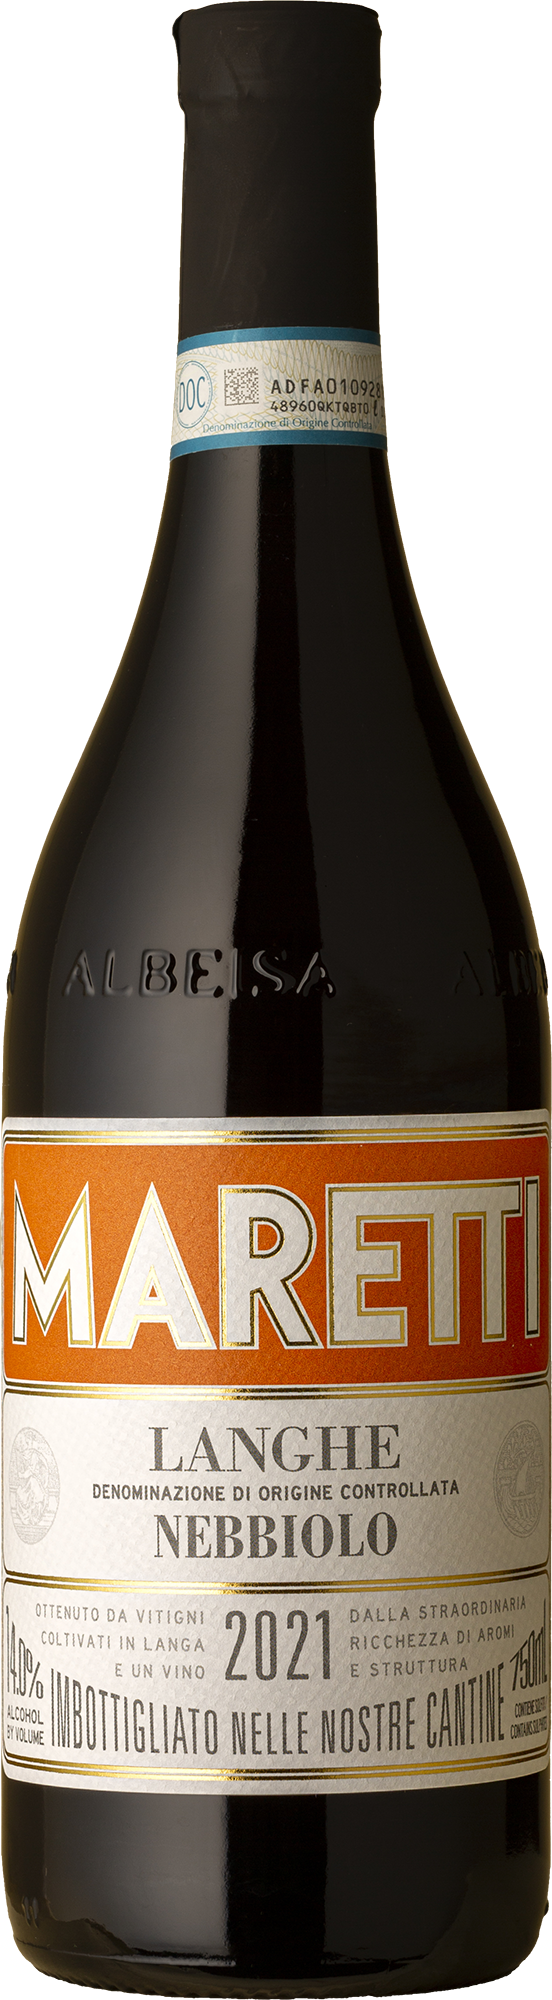 Maretti - Langhe Nebbiolo 2021 Red Wine